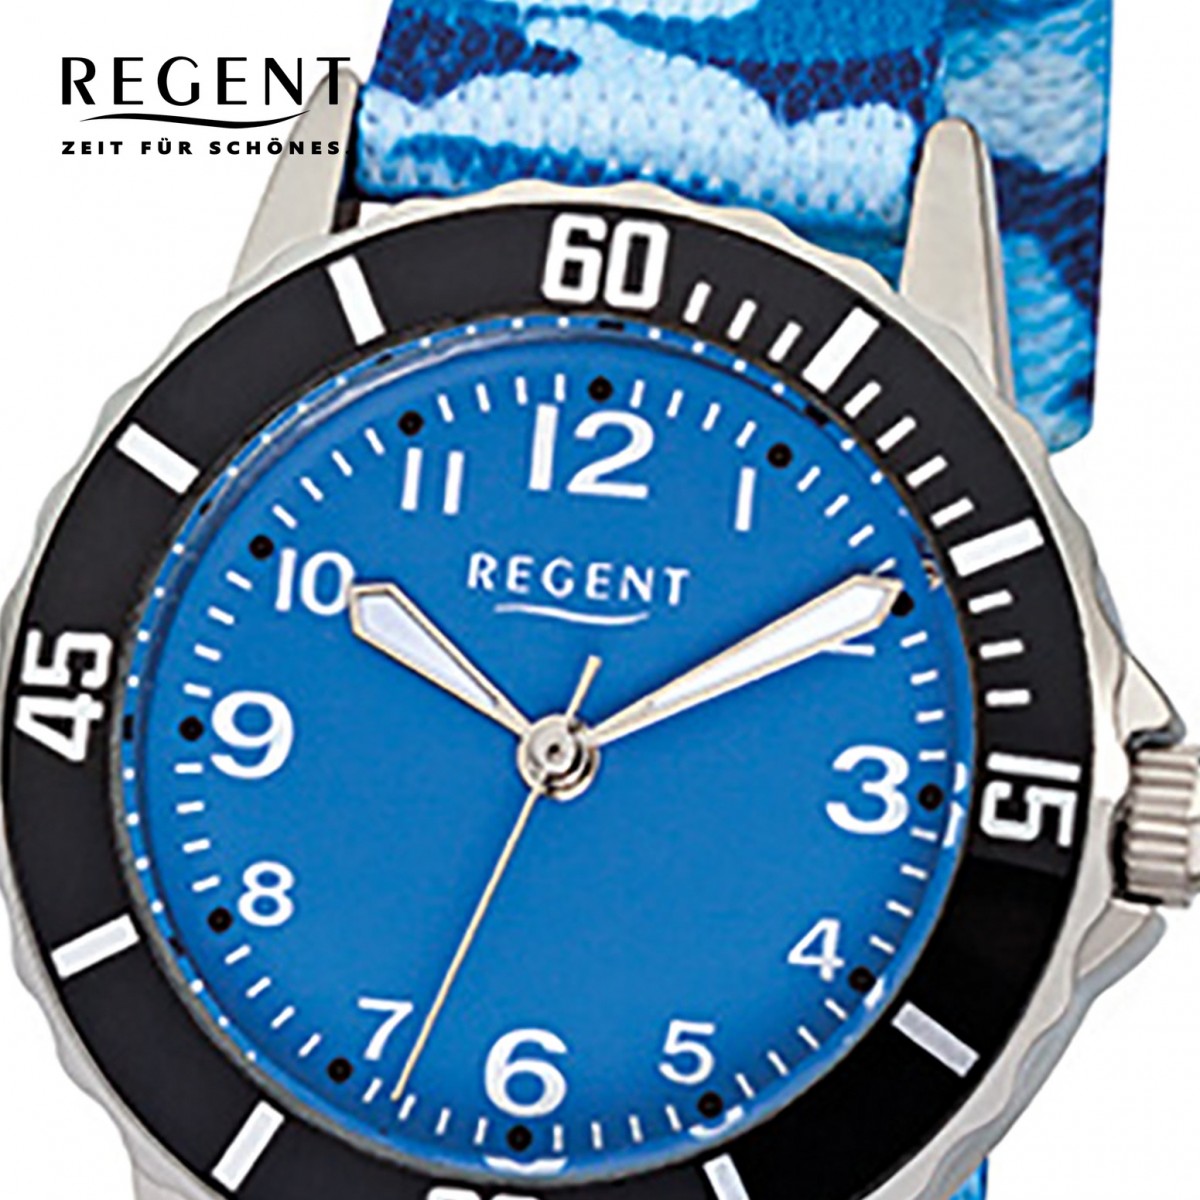 URF940 Kinder-Armbanduhr Quarz-Uhr Stoff-Armband Regent blau Textil, F-940